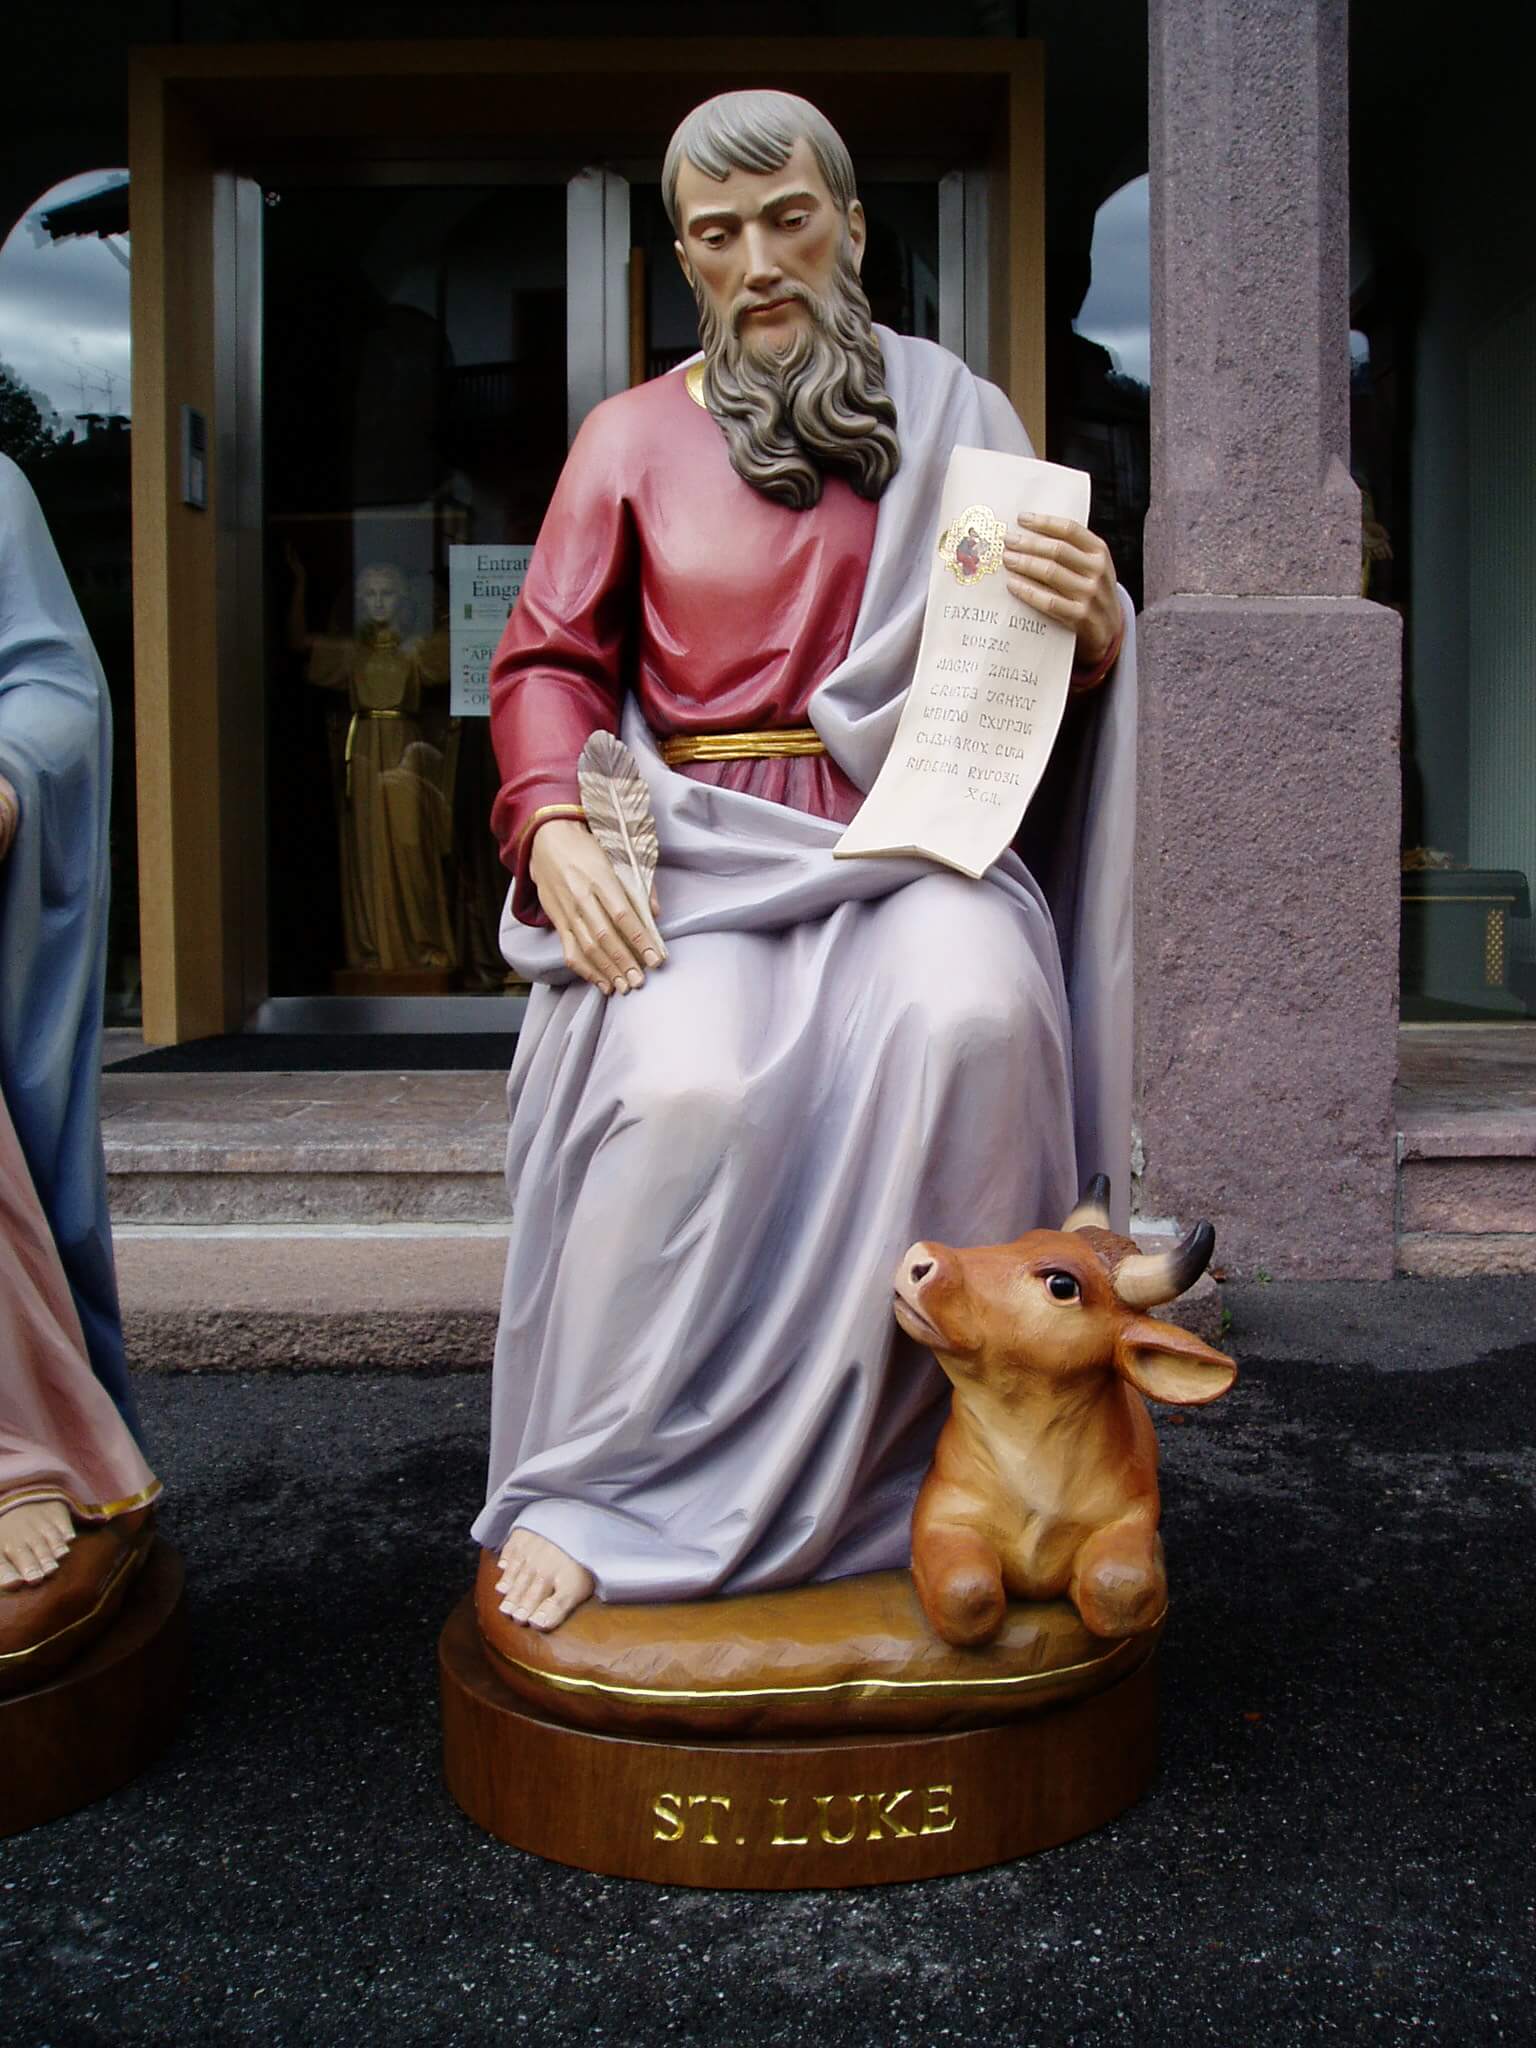 St Luke the Evangelist | Wood Carved Statue